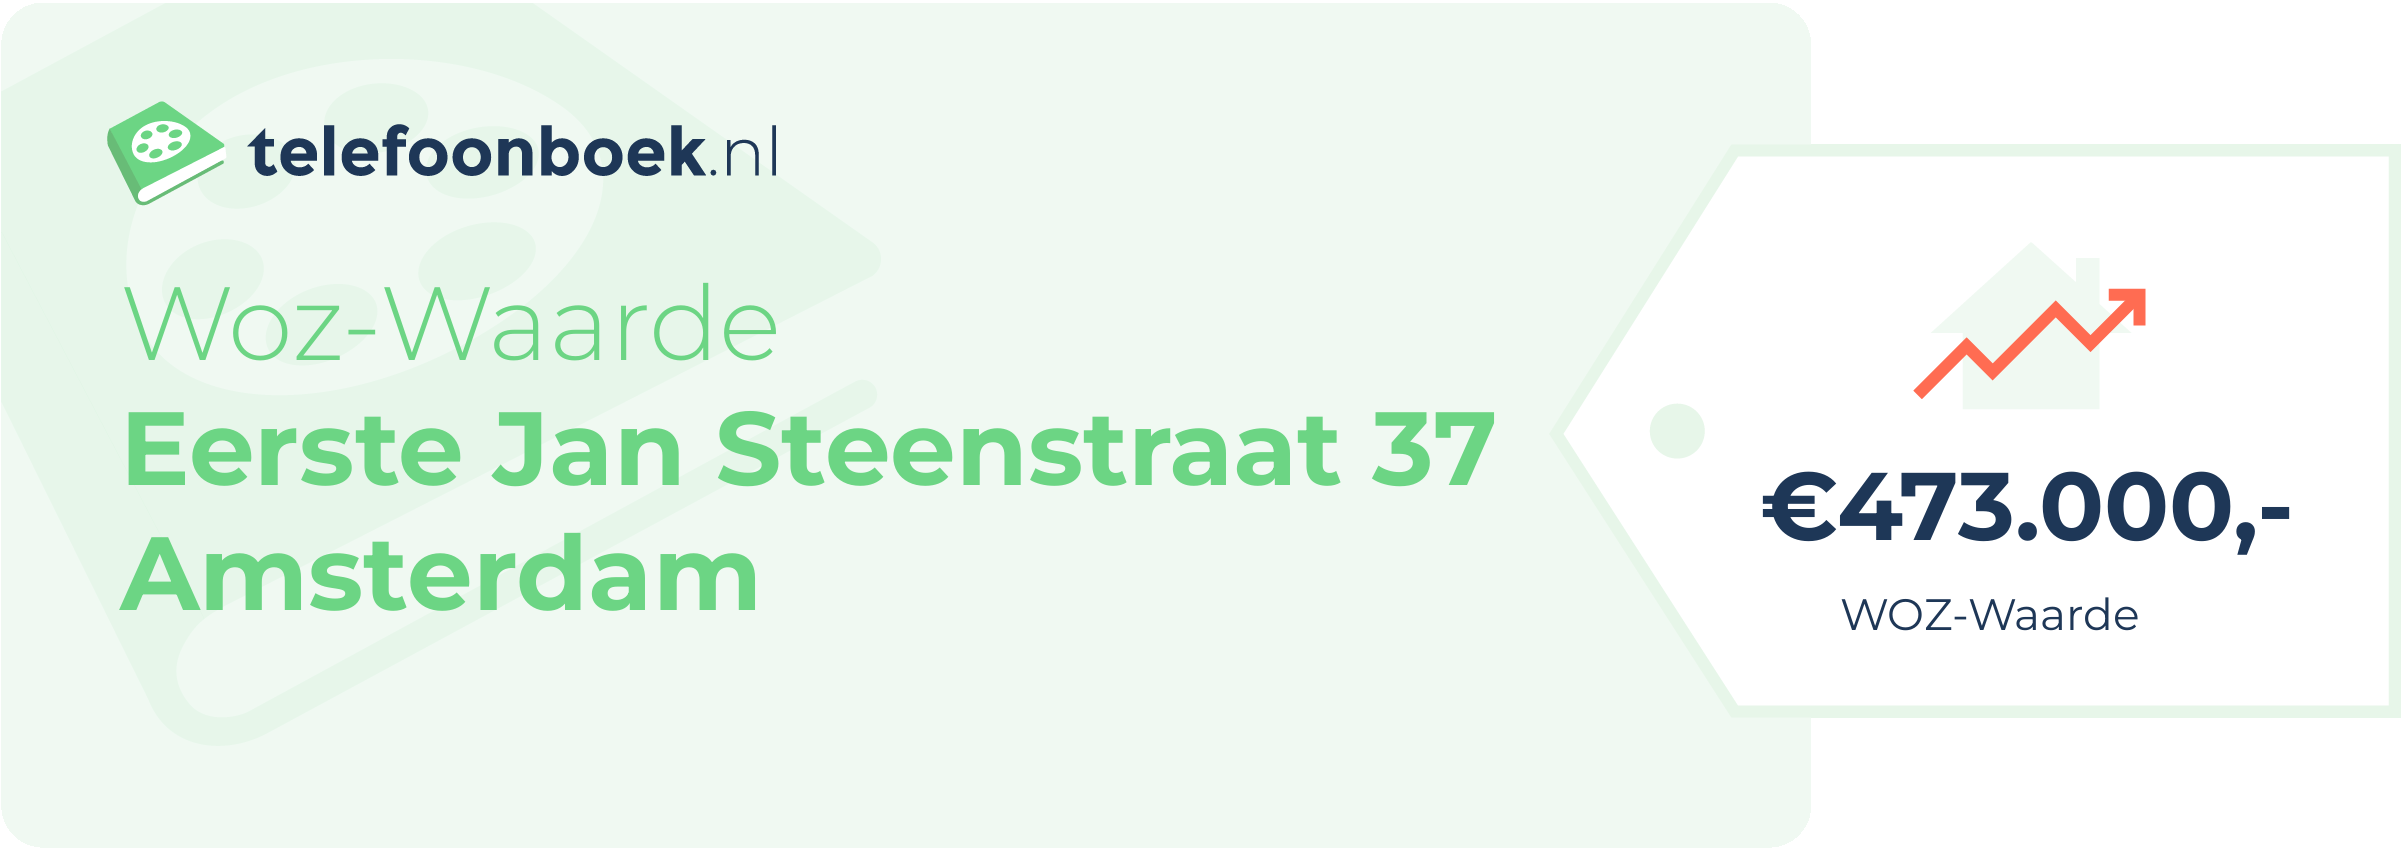 WOZ-waarde Eerste Jan Steenstraat 37 Amsterdam